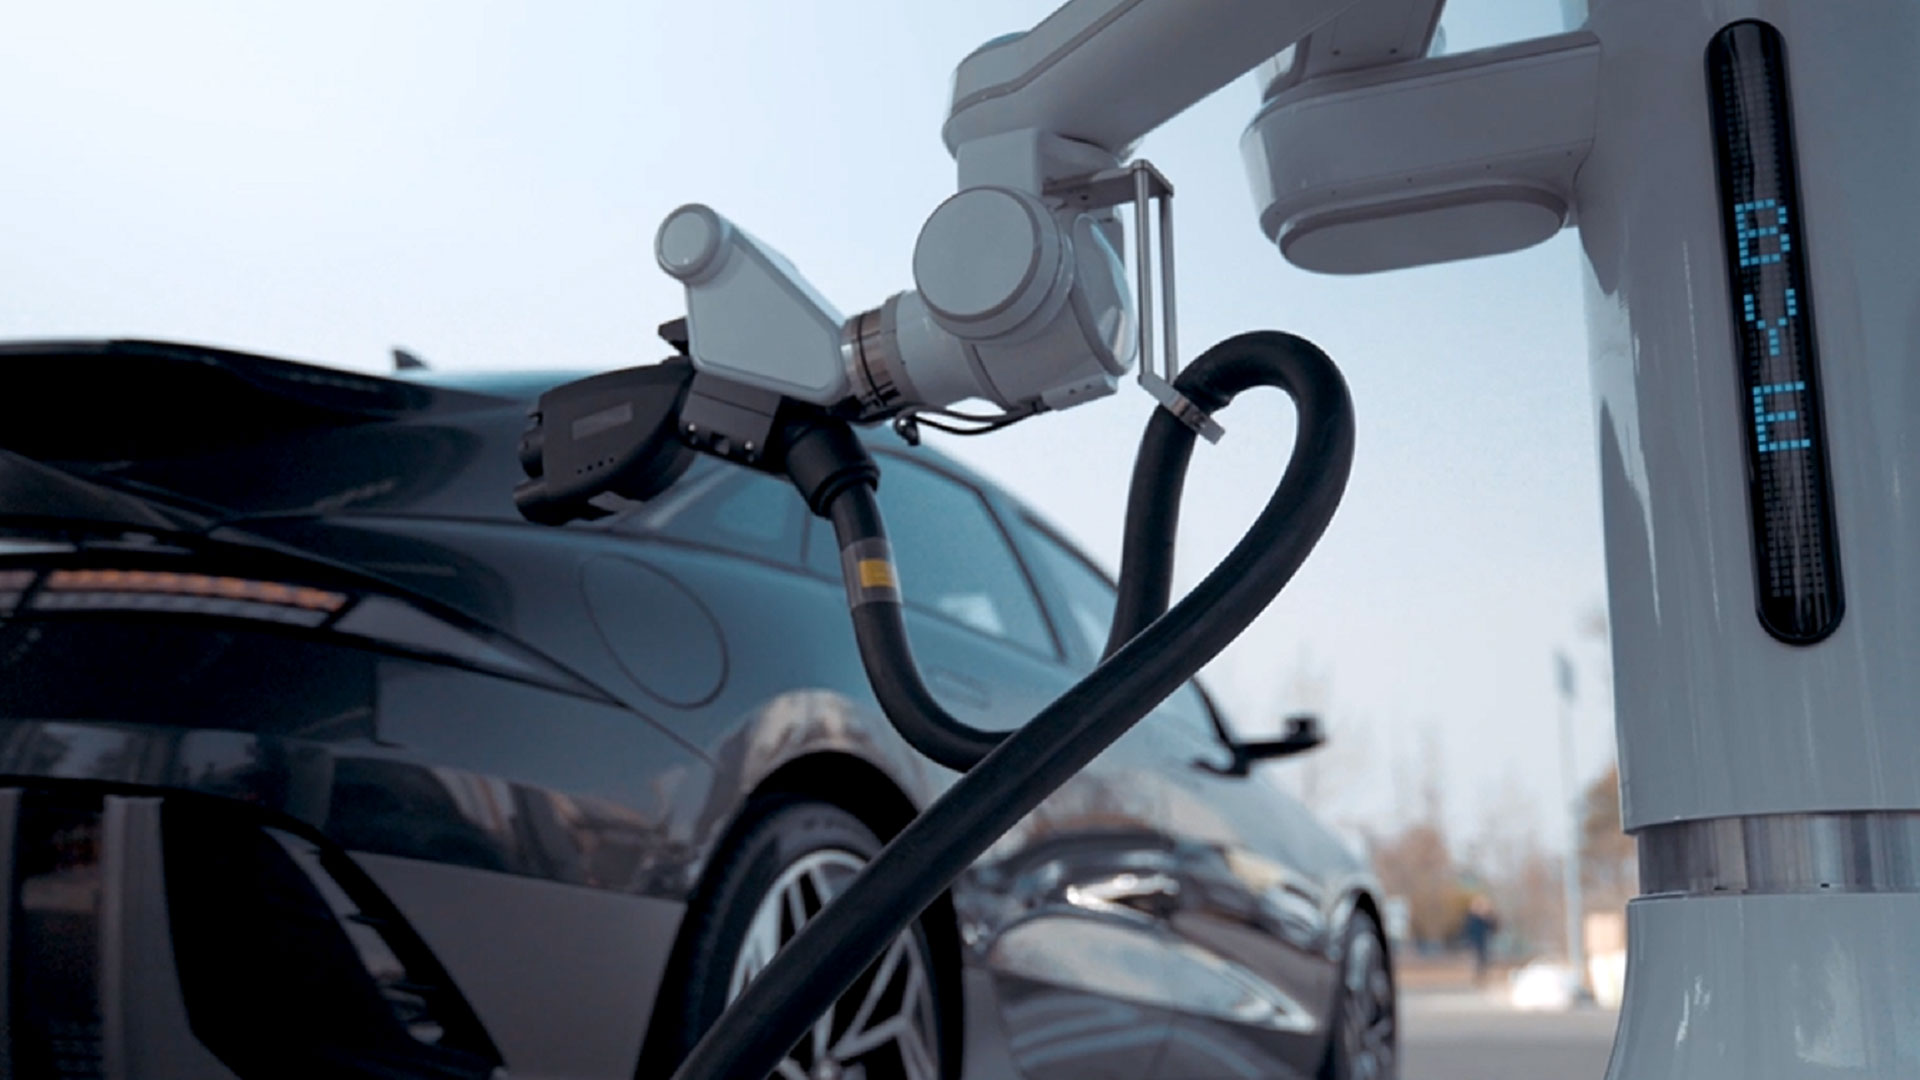 Hyundai hat einen automatischen Laderoboter vorgestellt, der sich selbst mit Elektrofahrzeugen verbindet und von ihnen trennt